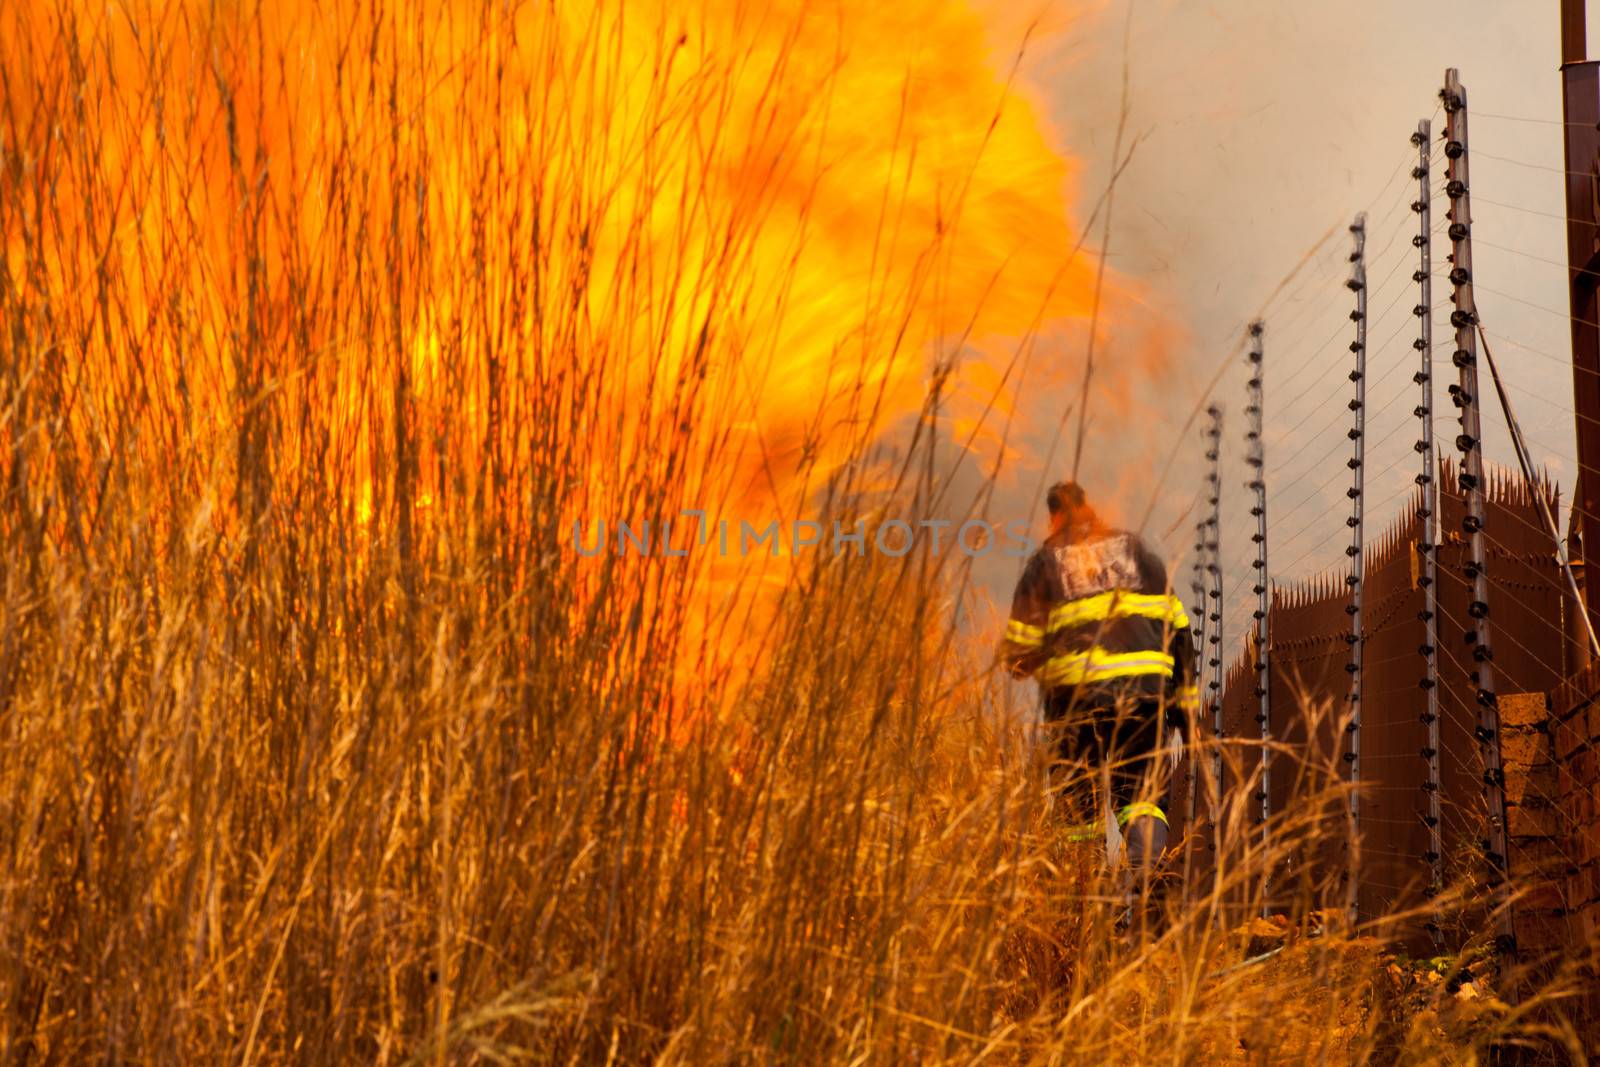 A fireman attending to a brush fire